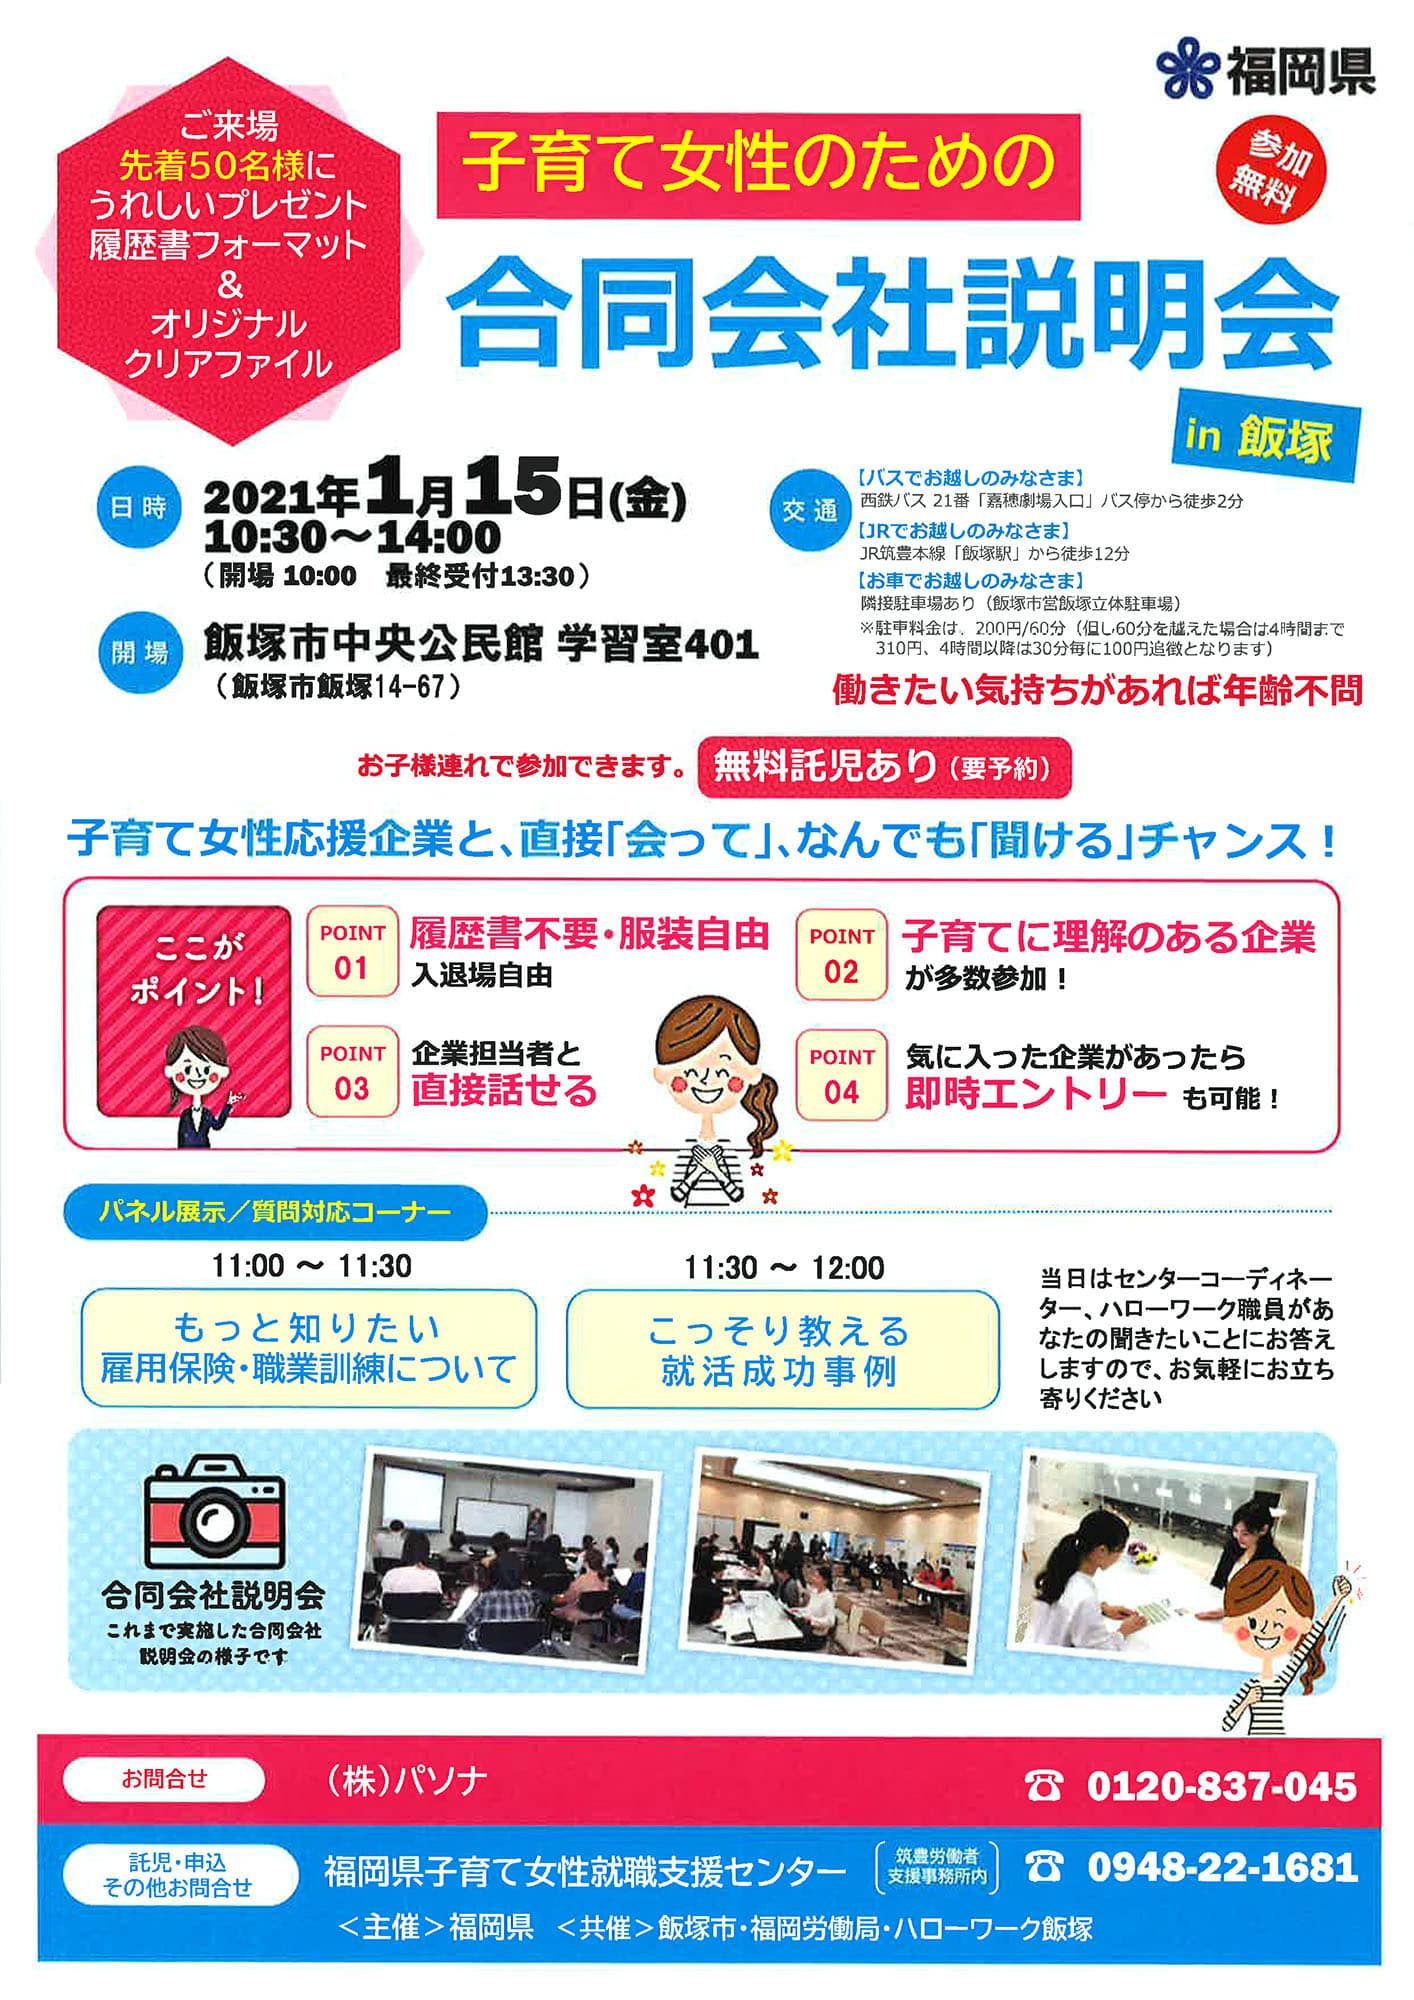 子育て女性のための合同会社説明会 in 飯塚(2021) EZUKA Event Entrance